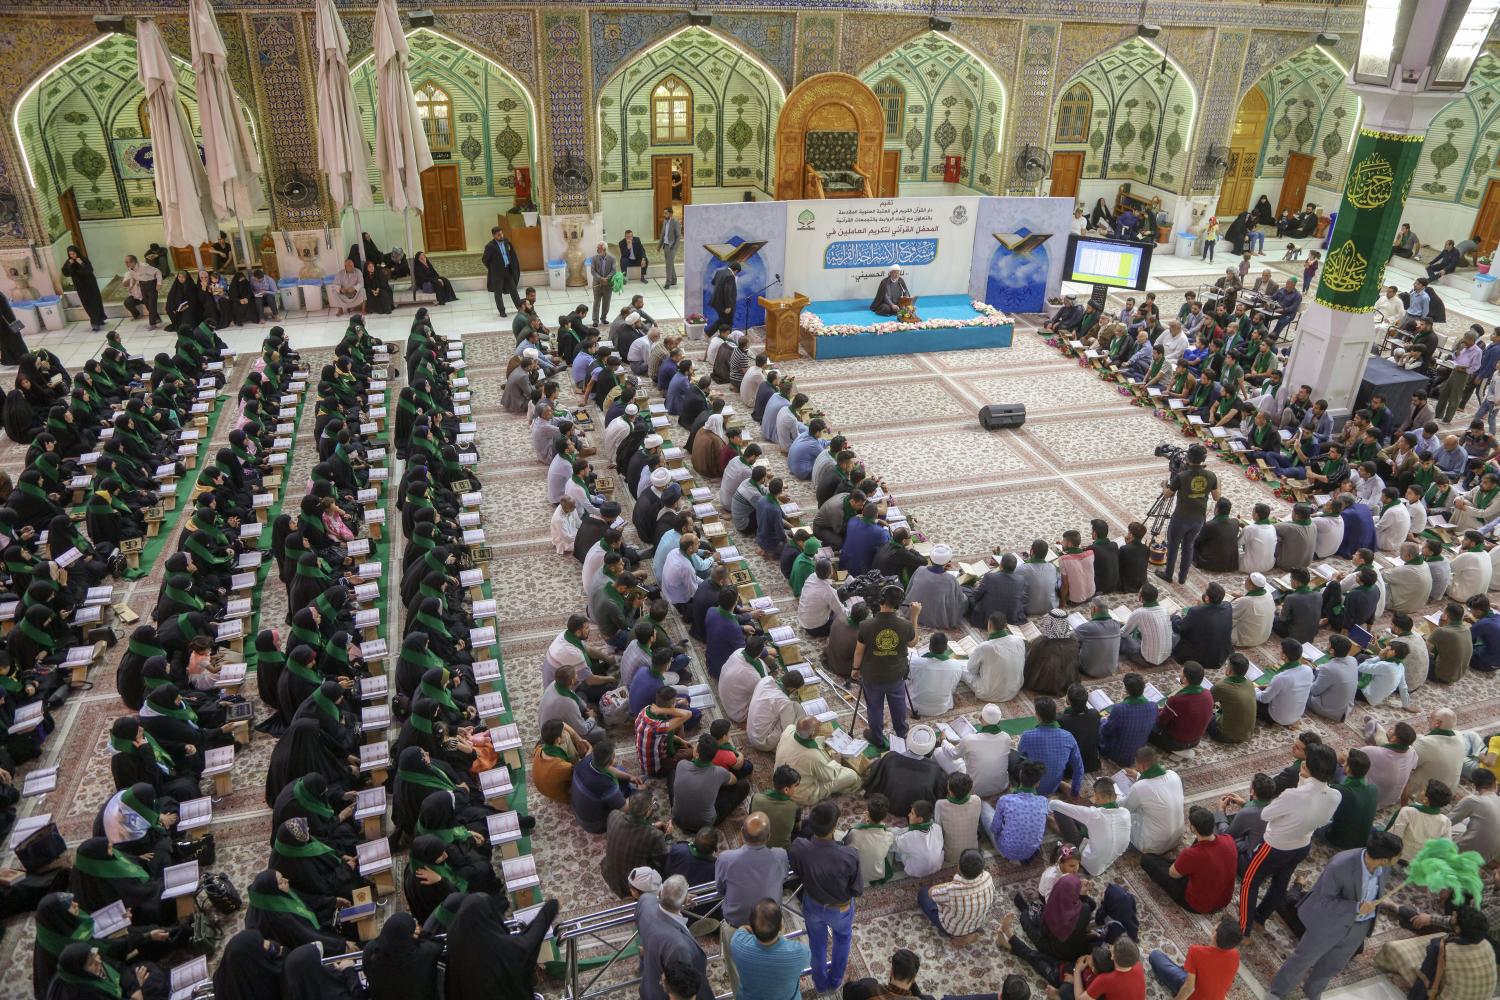 المحفل القرآني لتكريم العاملين في مشروع الاستراحة القرآنية | 2019